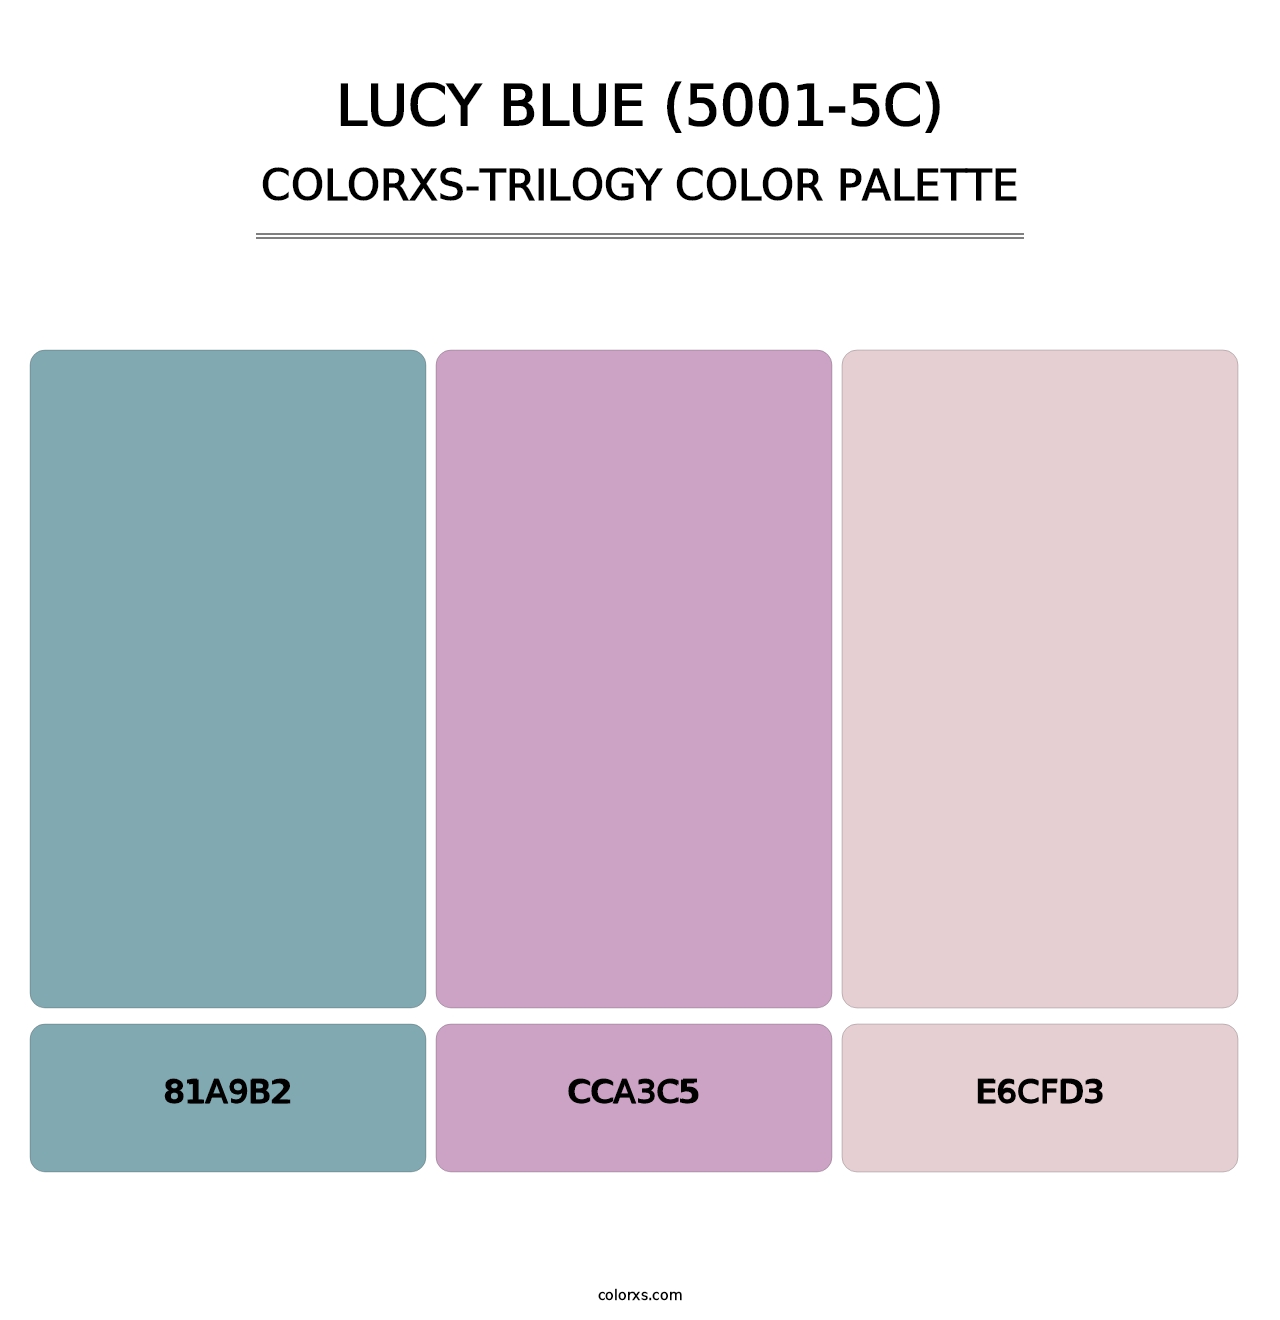 Lucy Blue (5001-5C) - Colorxs Trilogy Palette